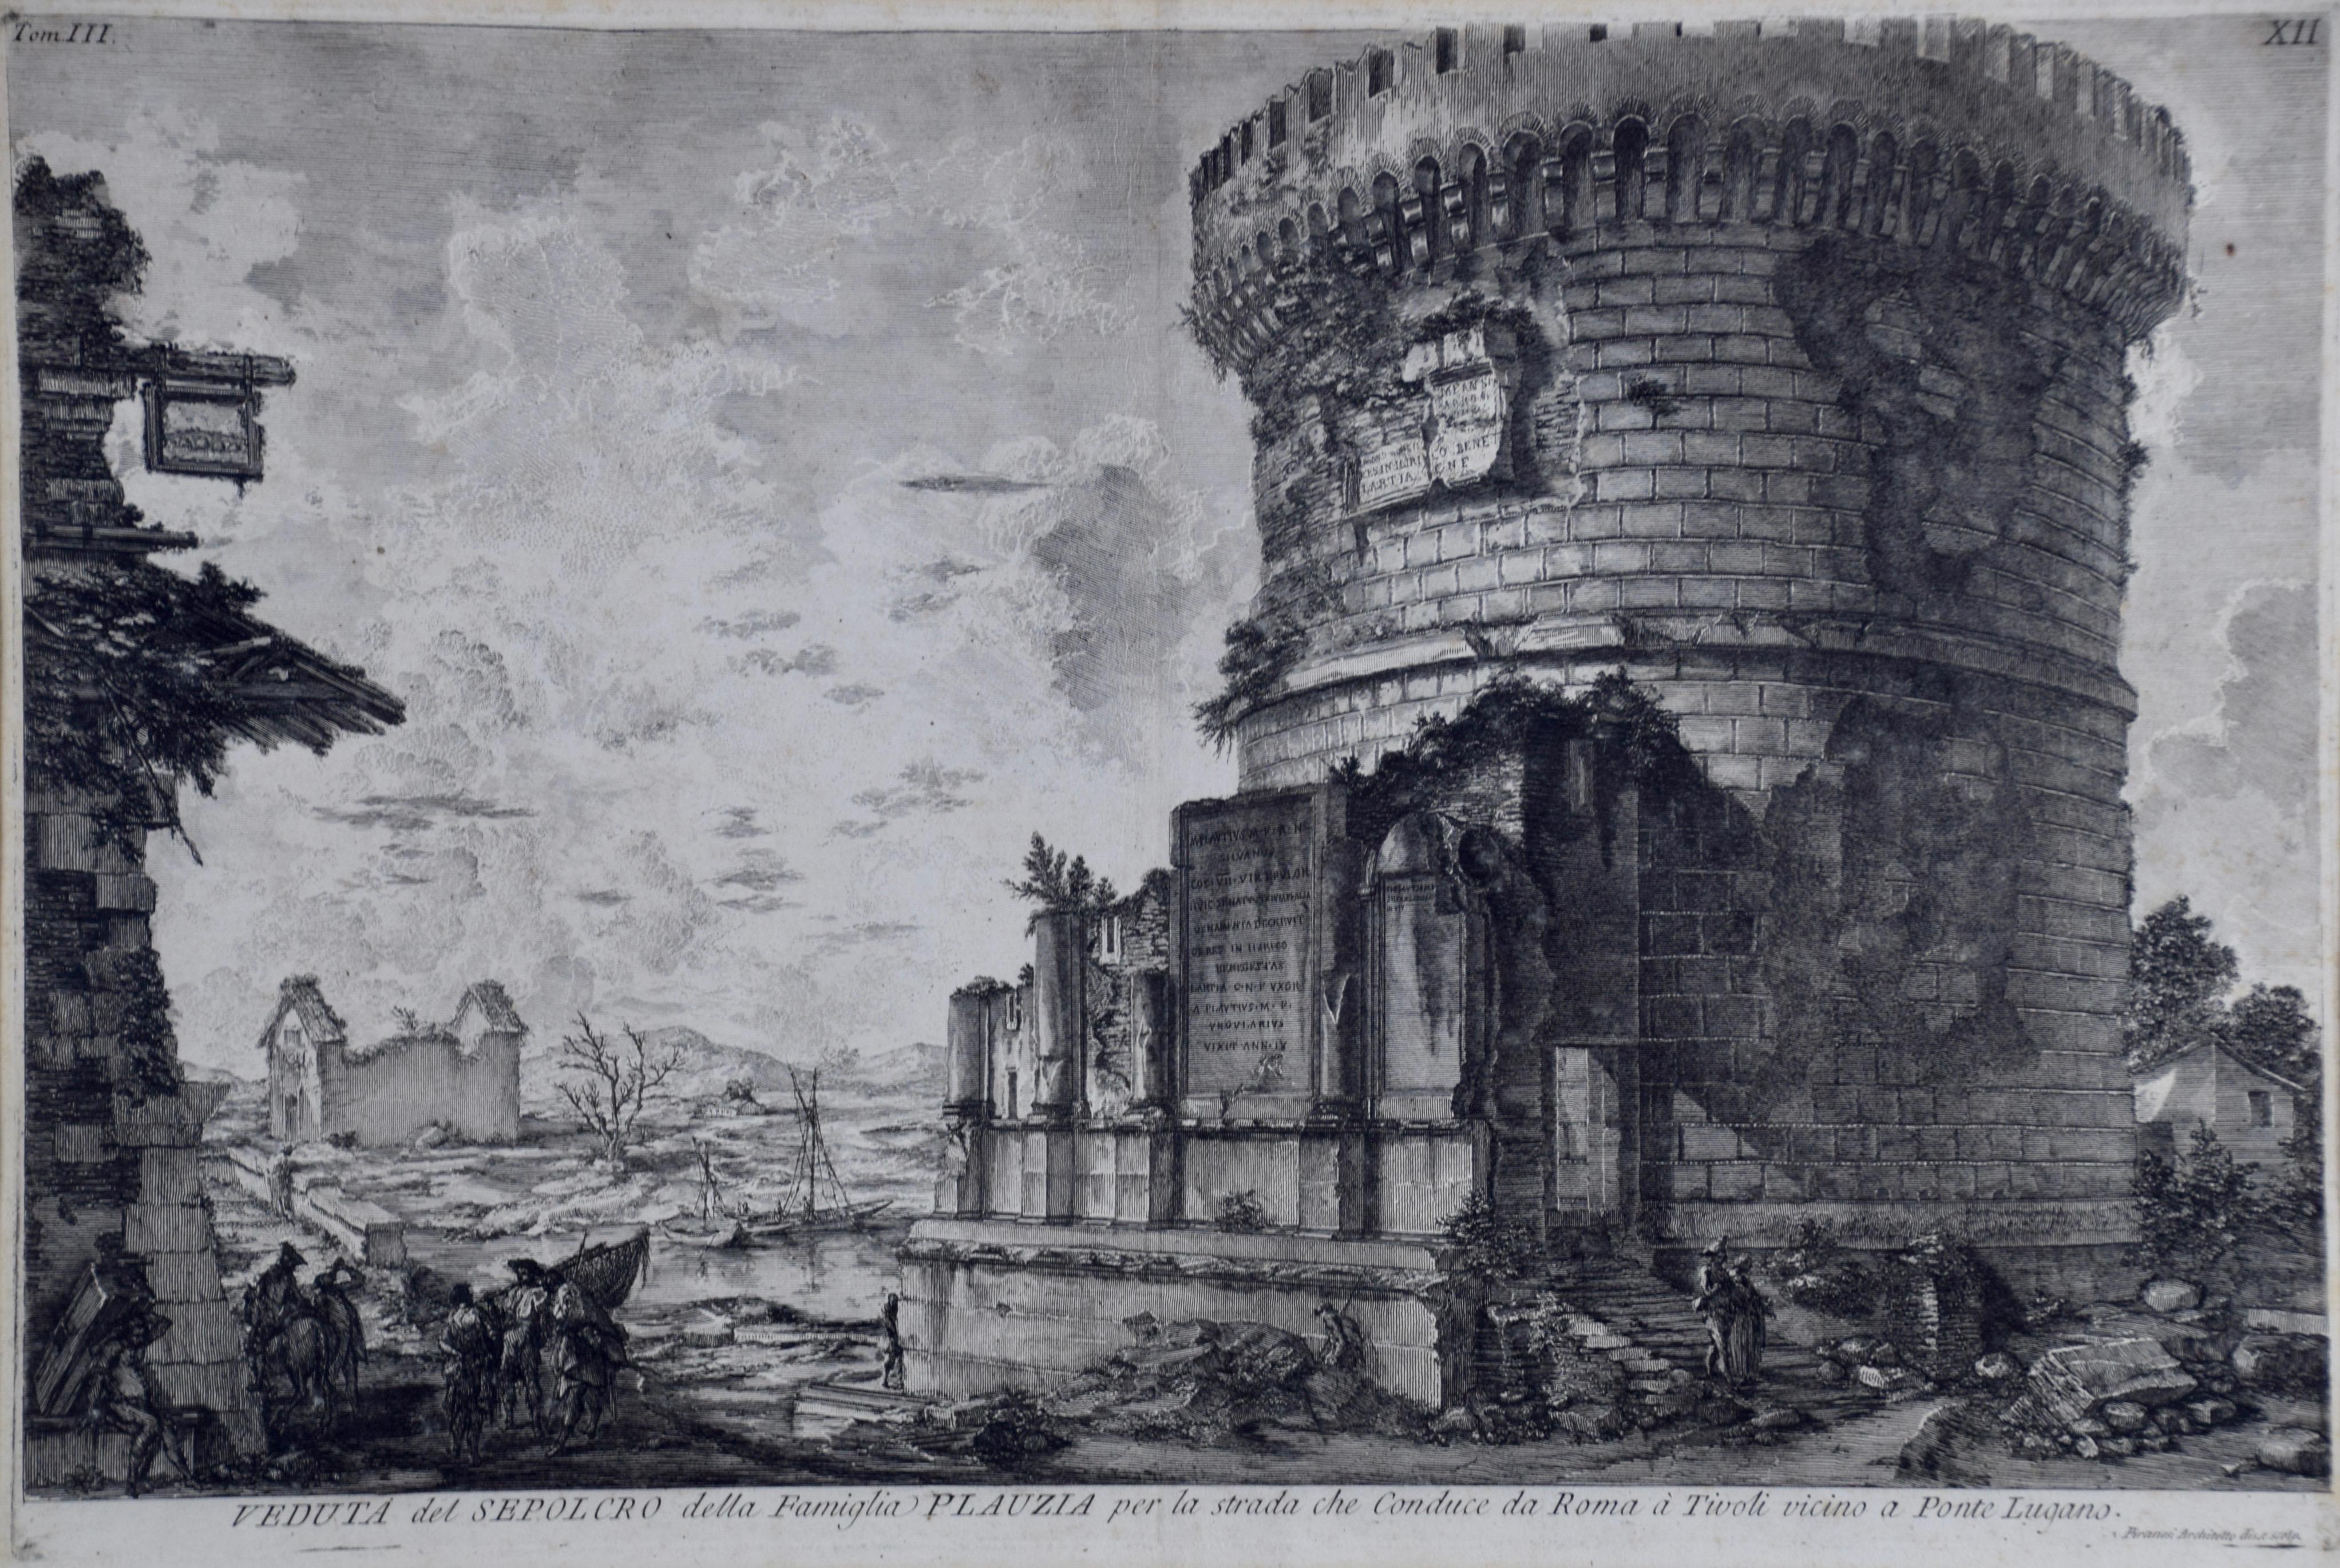 Gravure de Giovanni Piranesi représentant l'ancienne architecture romaine, 18e siècle - Print de Giovanni Battista Piranesi